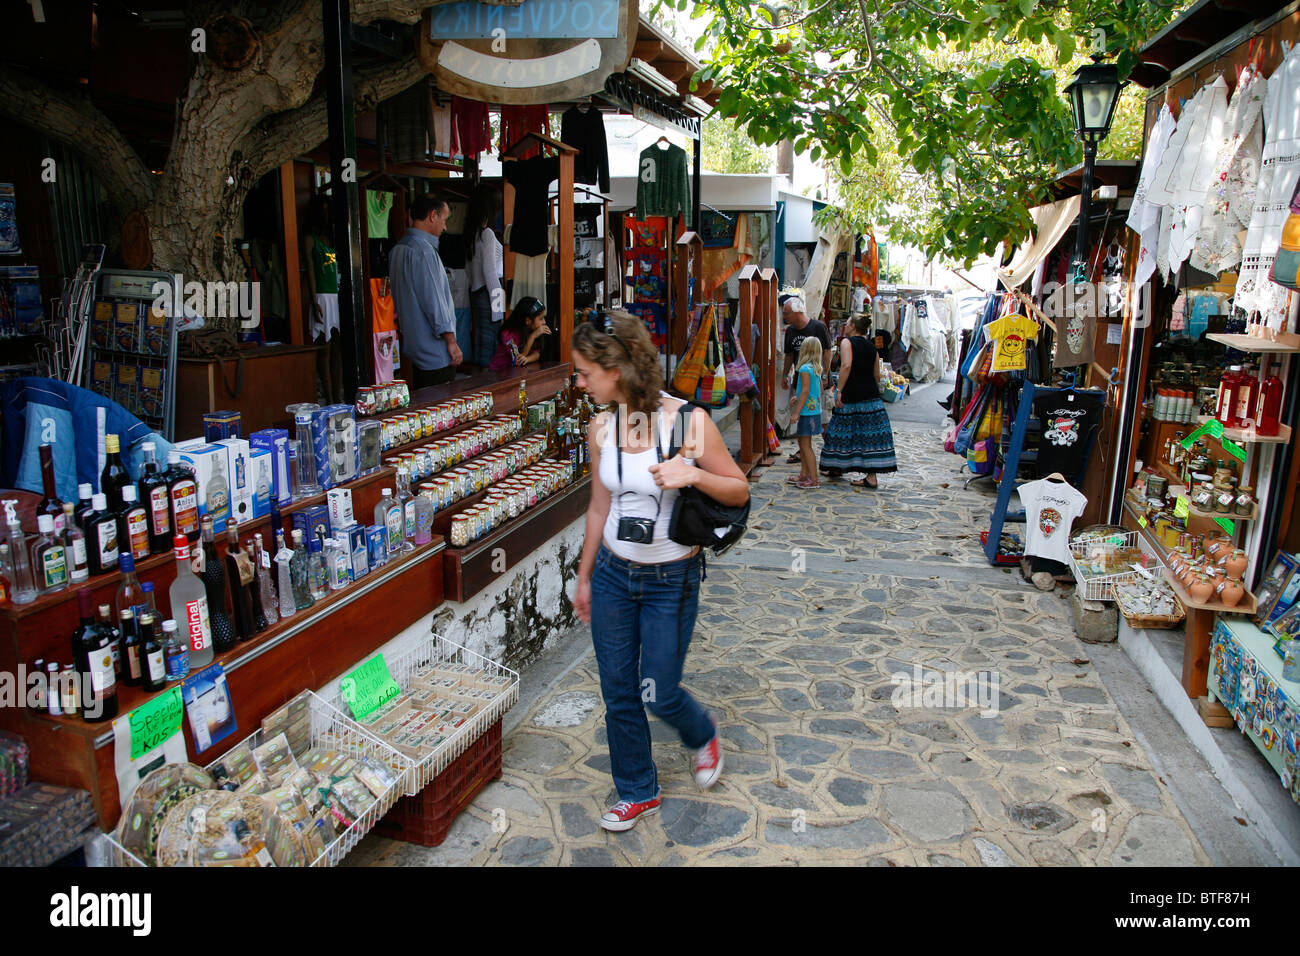 Mercato con negozi di souvenir, Zia, Kos, Grecia. Foto Stock